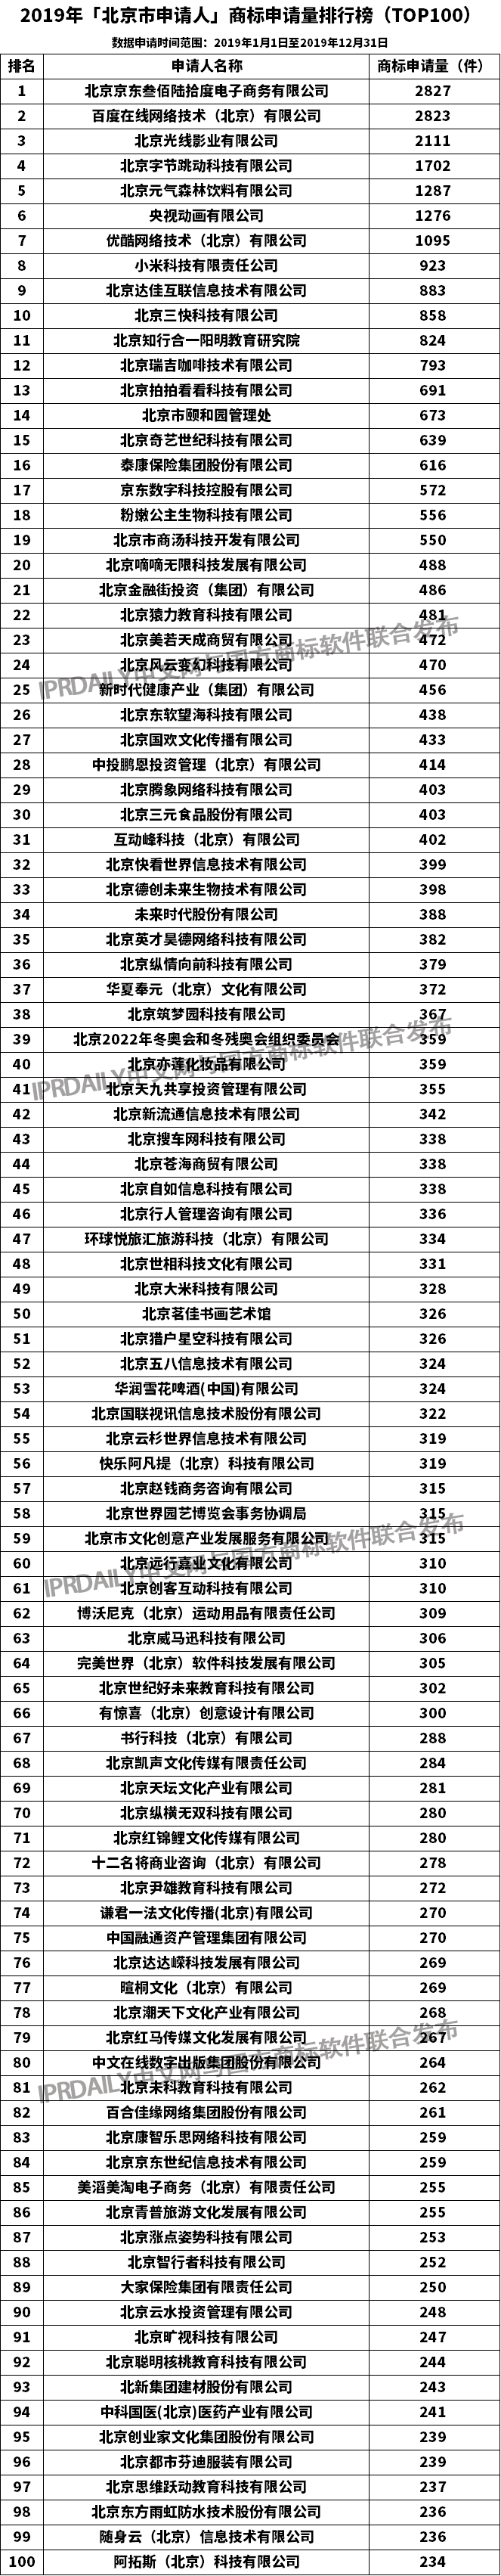 2019年「北京市申请人」商标申请量排行榜（TOP100）